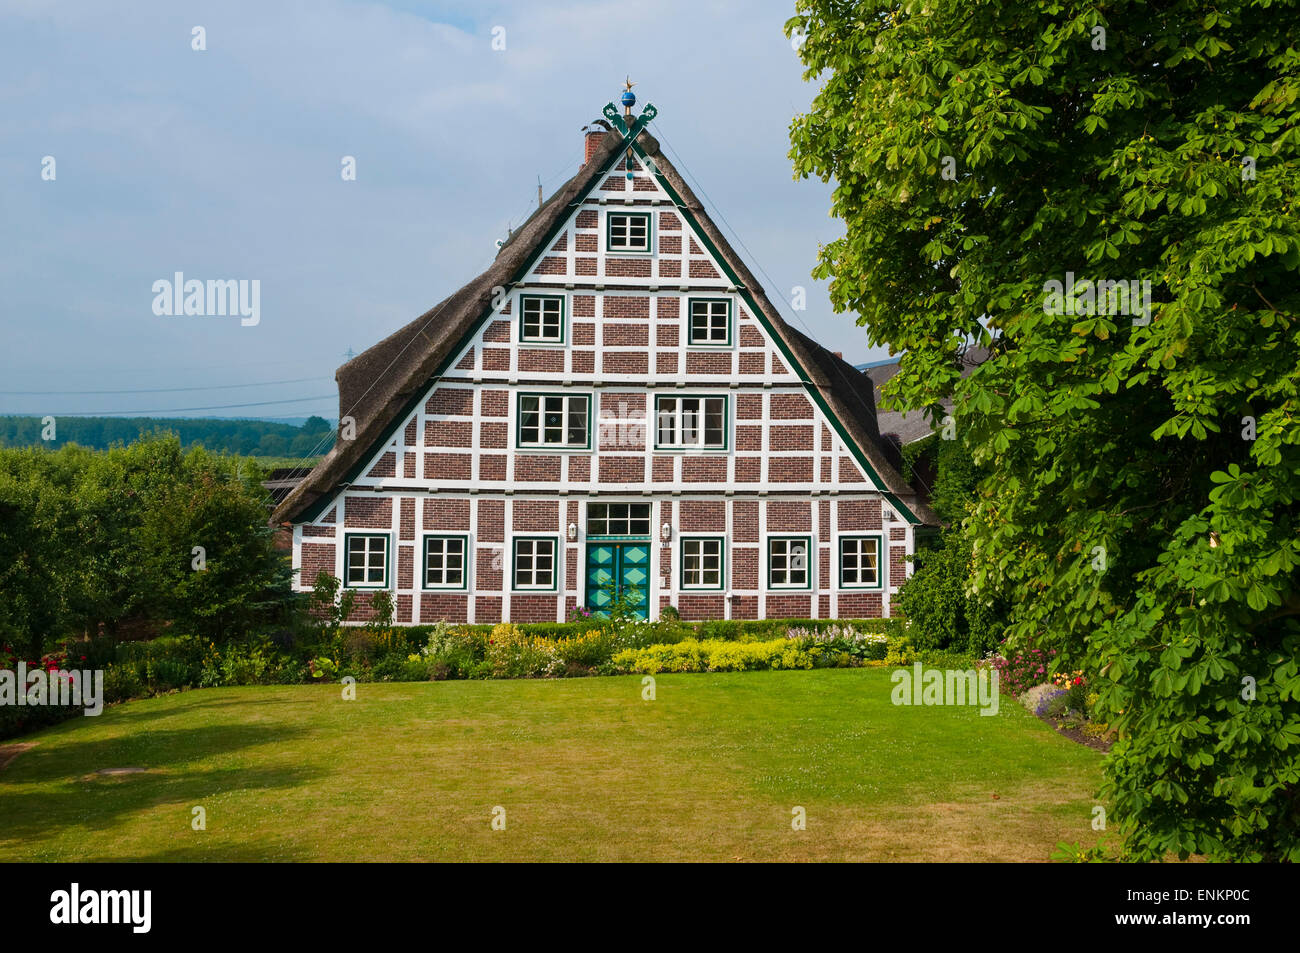 Bauernhof, Fachwerk, Altes Land, Niedersachsen, Deutschland | casa de granja, con entramado de madera, Altes Land, Baja Sajonia, Alemania Foto de stock